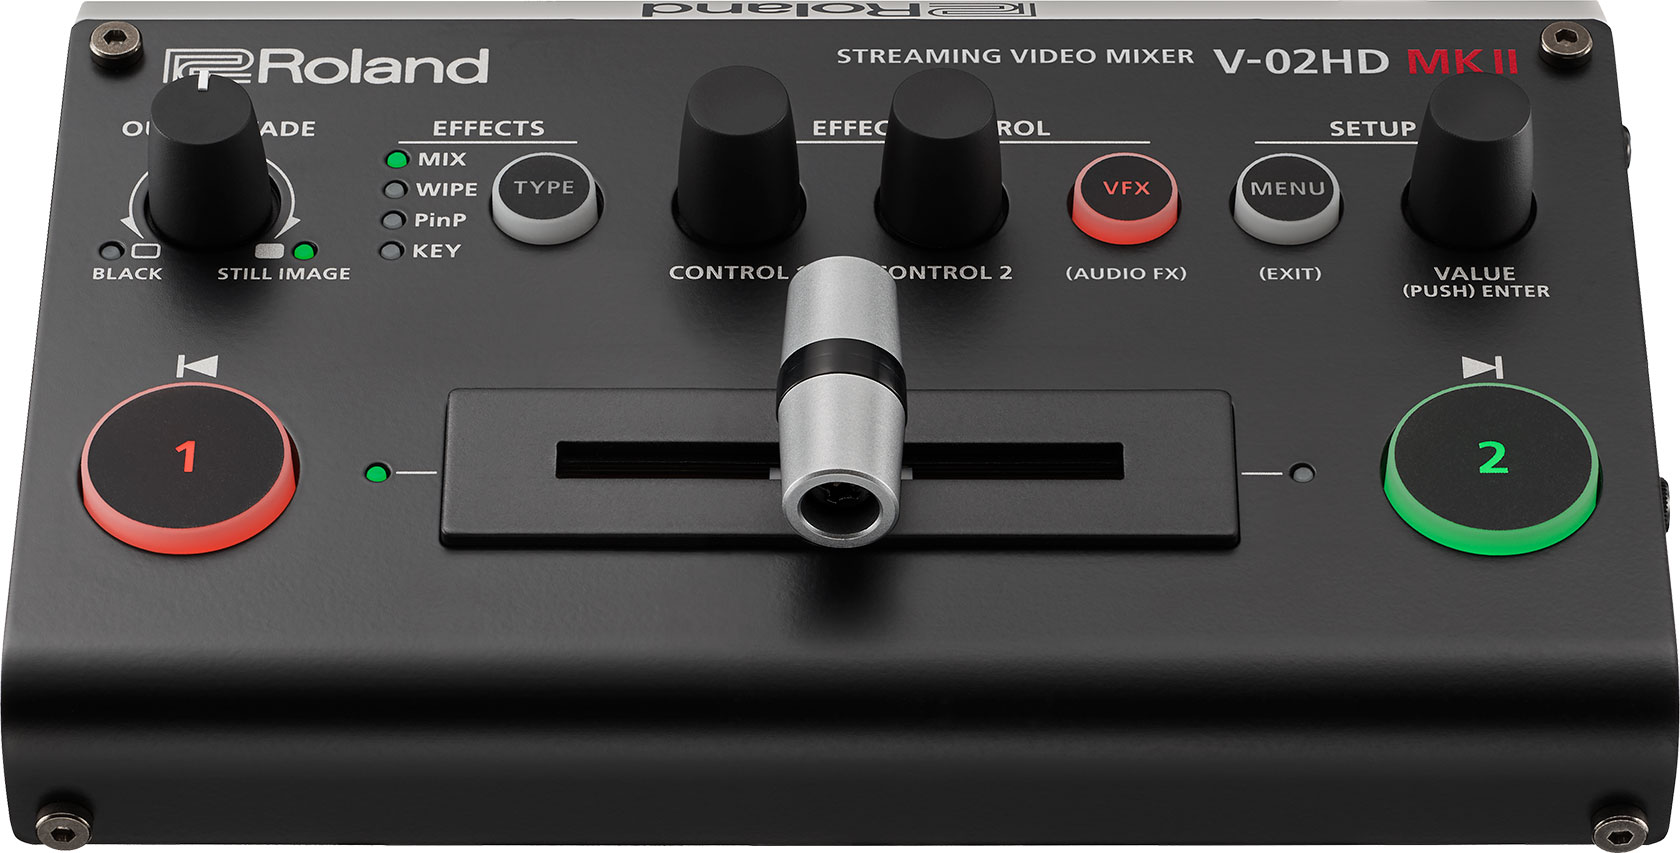 【メーカー直売】  ビデオミキサー V-02HD 【送料込・元箱付】Roland DJ機器